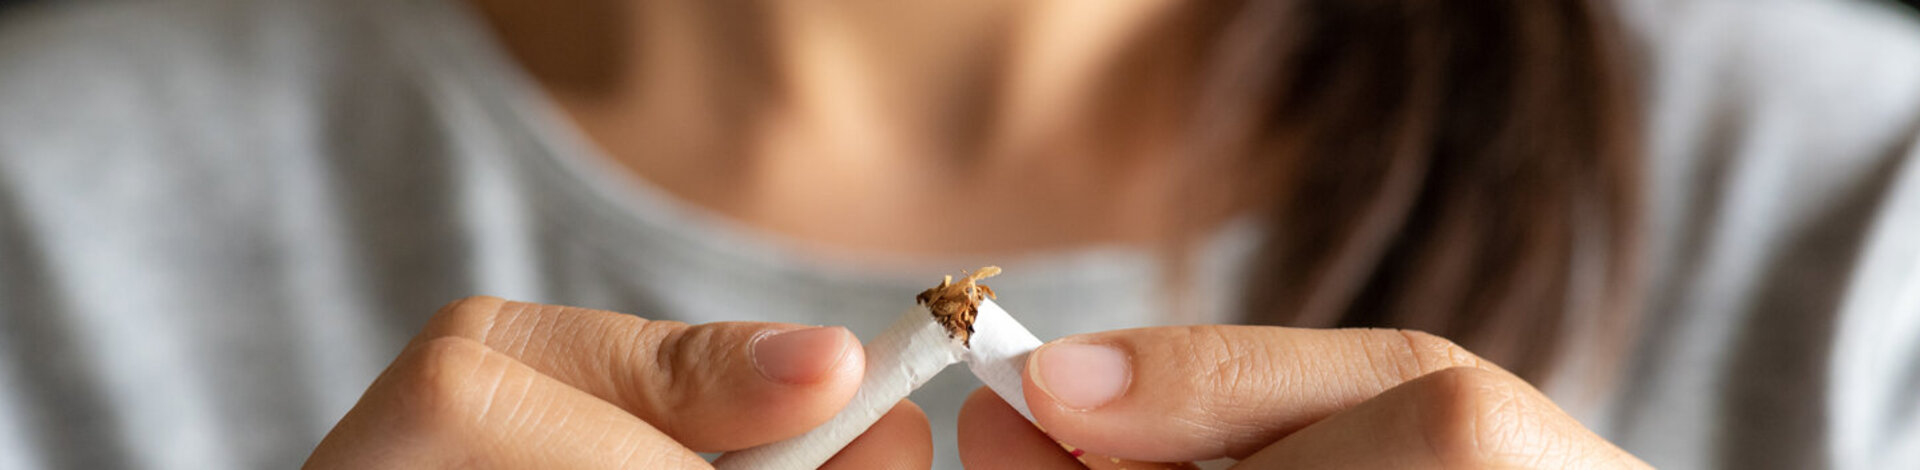 Eine Frau zerbricht eine Zigarette. Die AOK unterstützt alle Versicherten dabei, Nichtraucher zu werden.